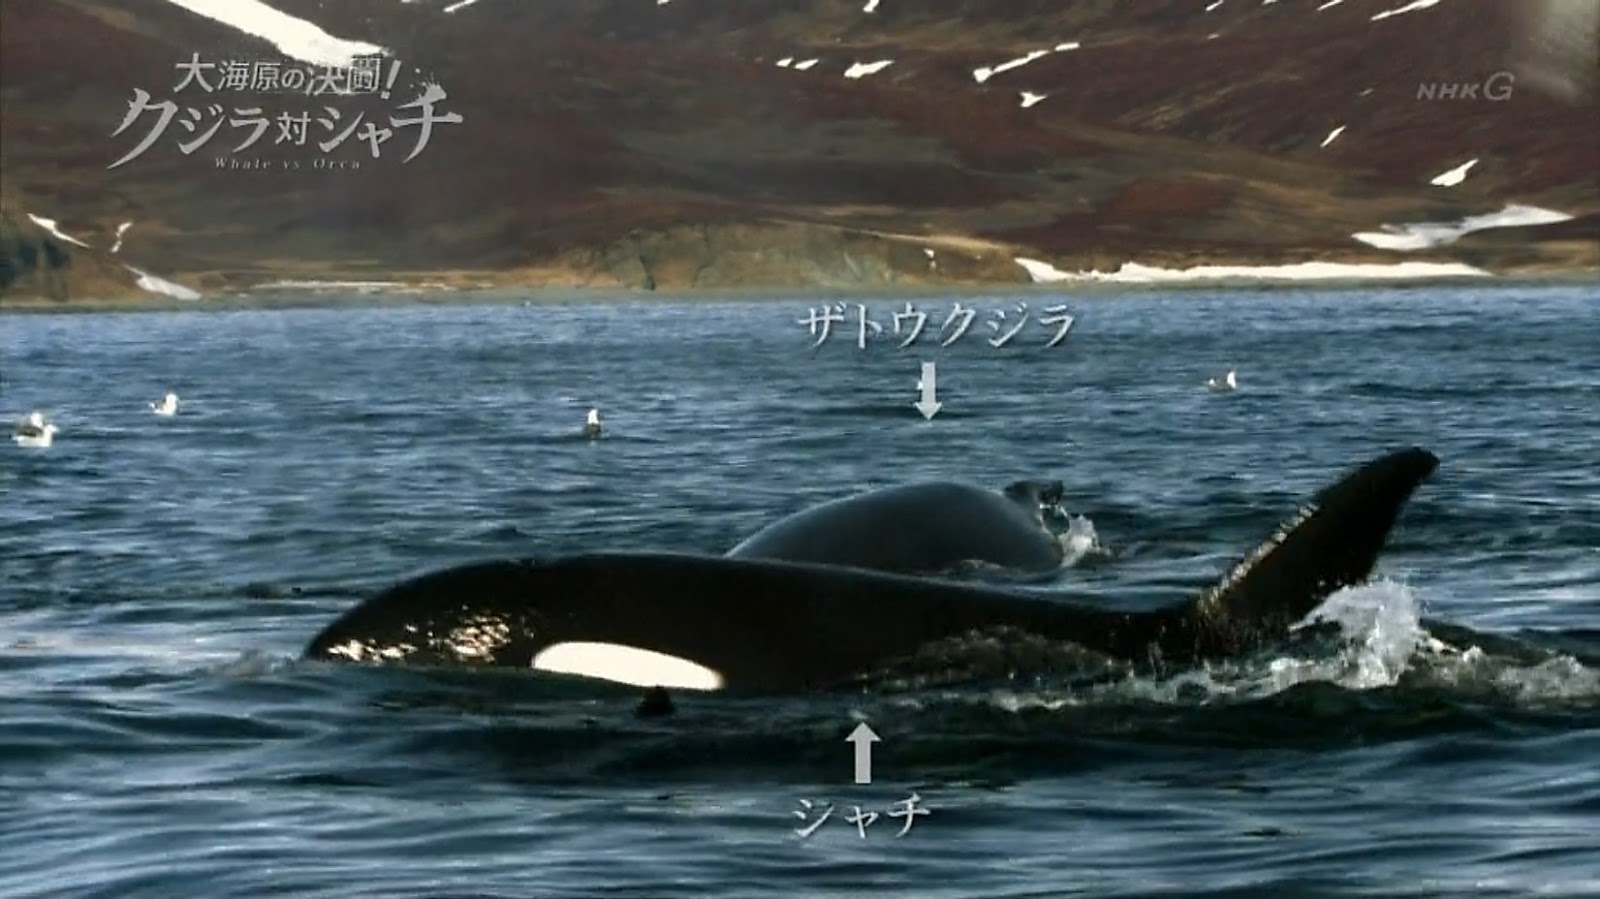 視・読・聴〕: NHKスペシャル「大海原の決闘! クジラ対シャチ」